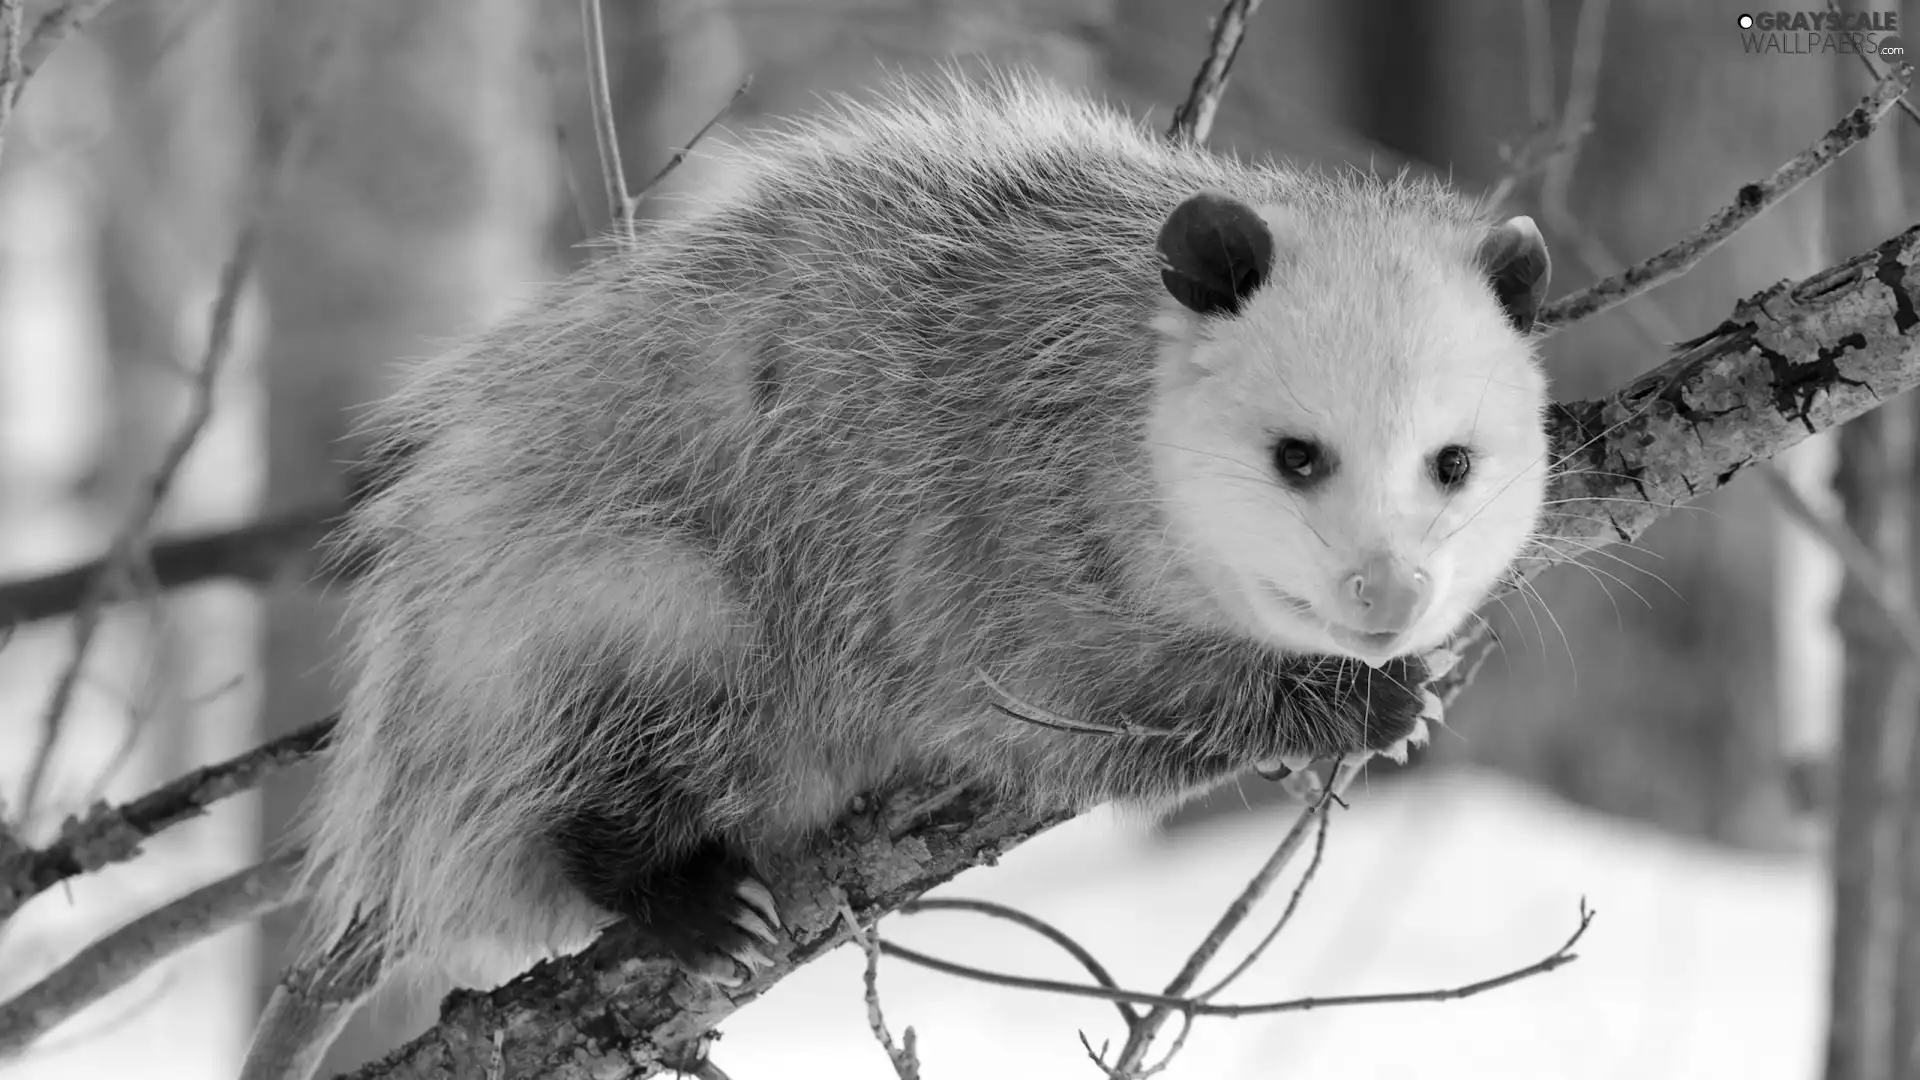 opossum, branch